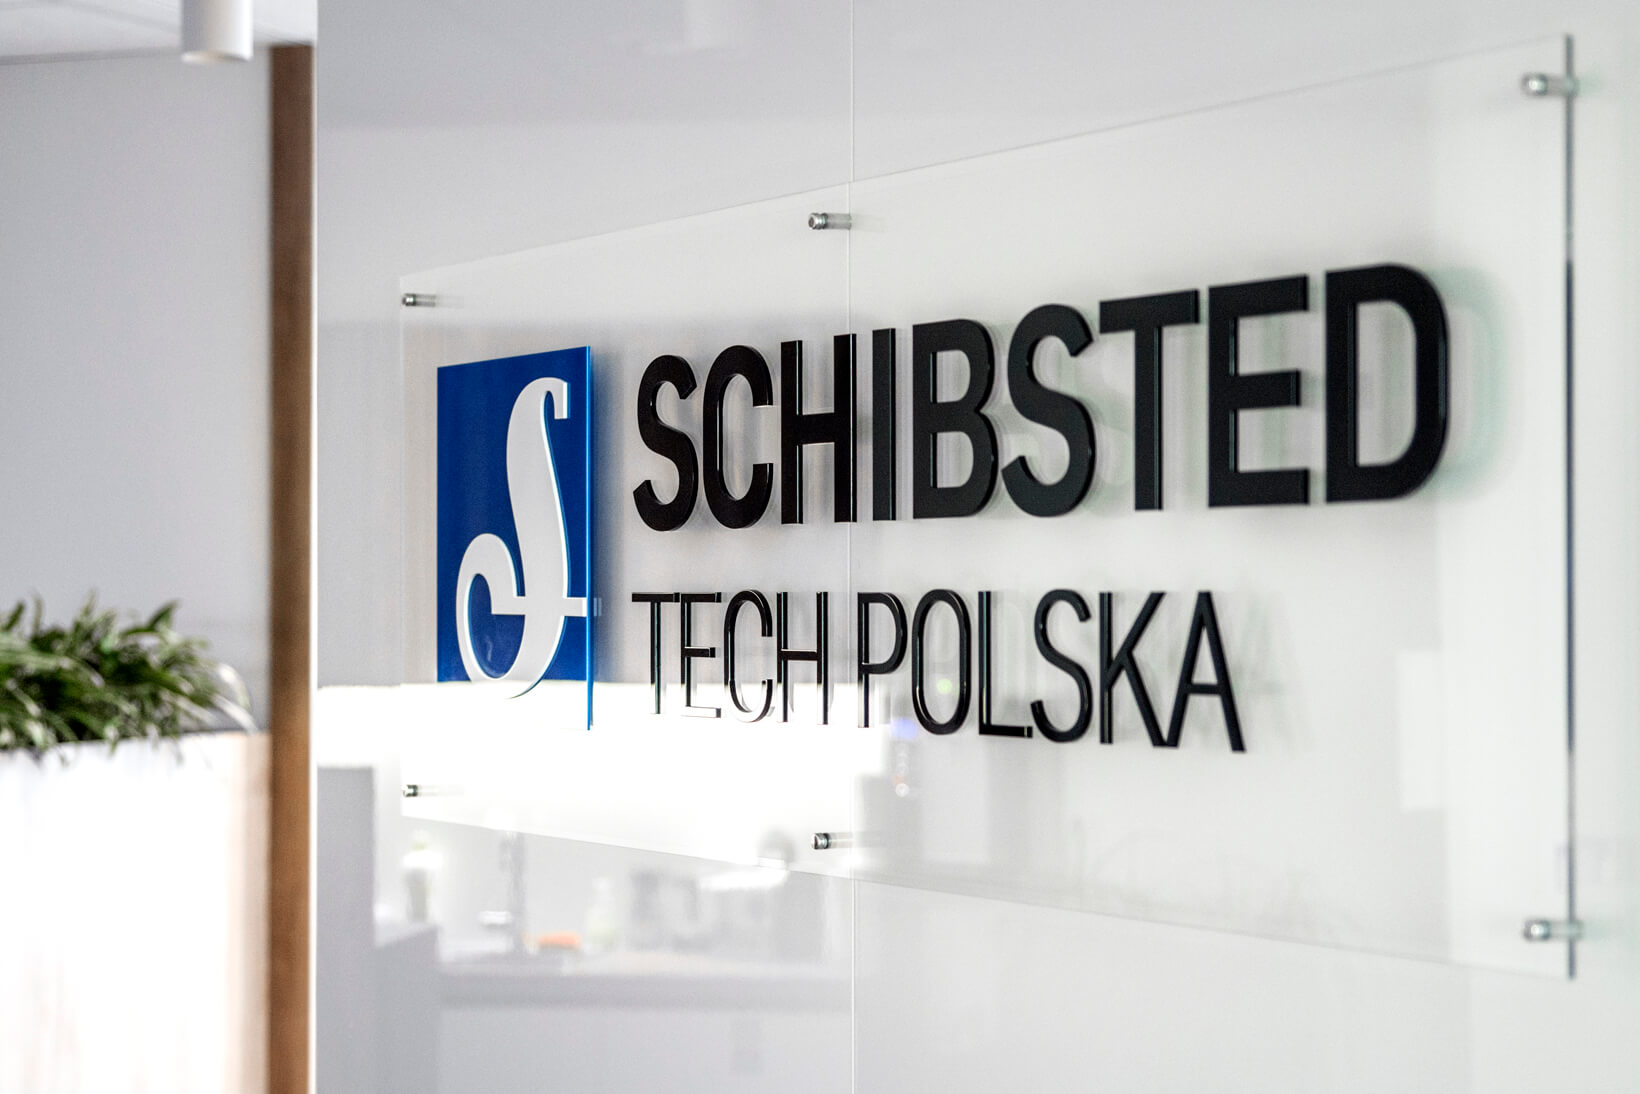 Schibsted Tech Polonia - Schibsted Tech Poland - logo e lettere 3D su base di plexiglass sui distanziatori nell'area della reception